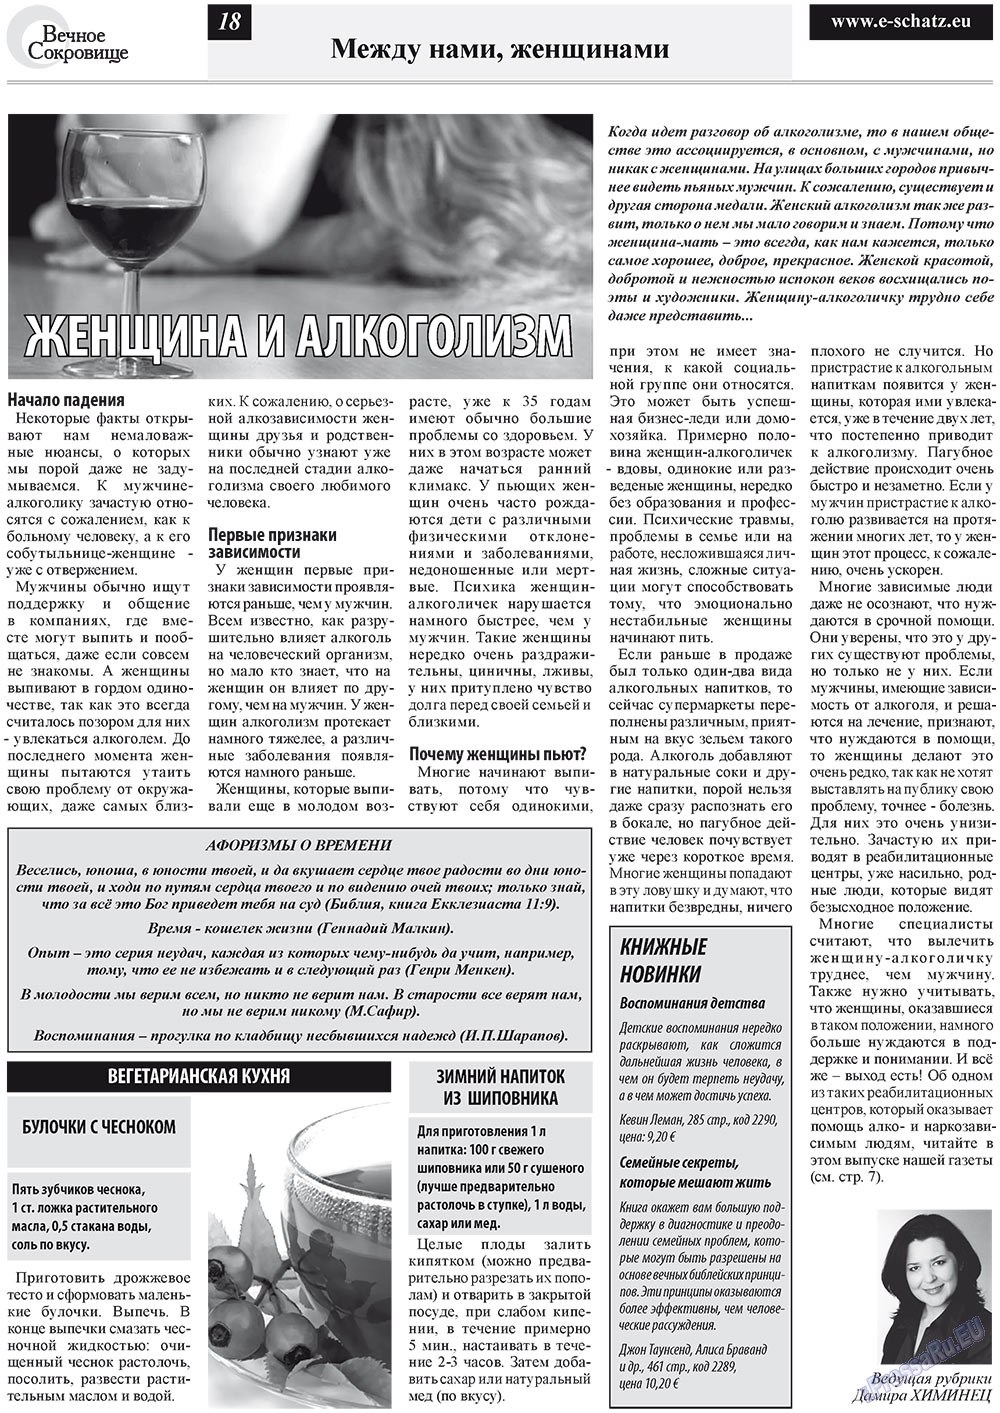 Вечное сокровище (газета). 2012 год, номер 1, стр. 18